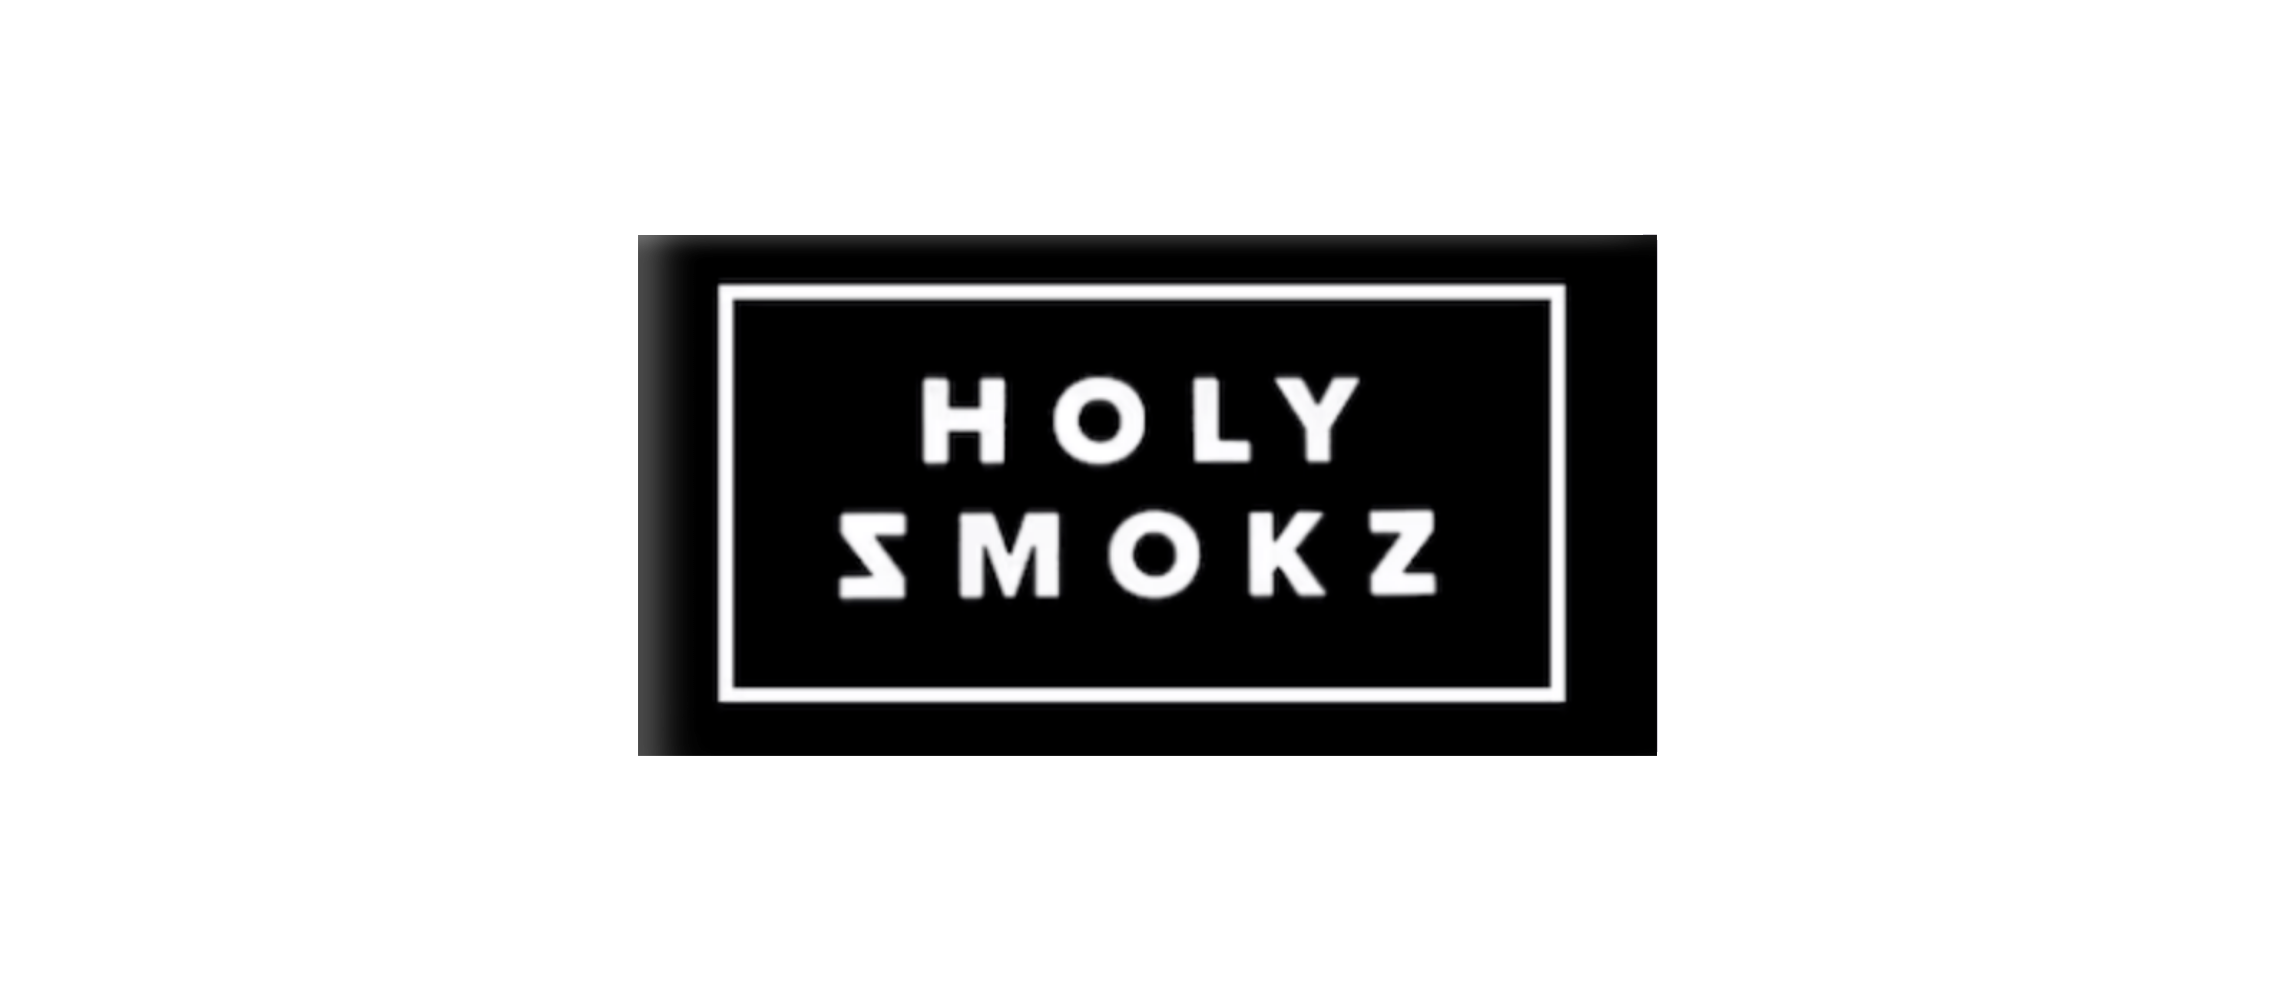 HOLY SMOKZ 